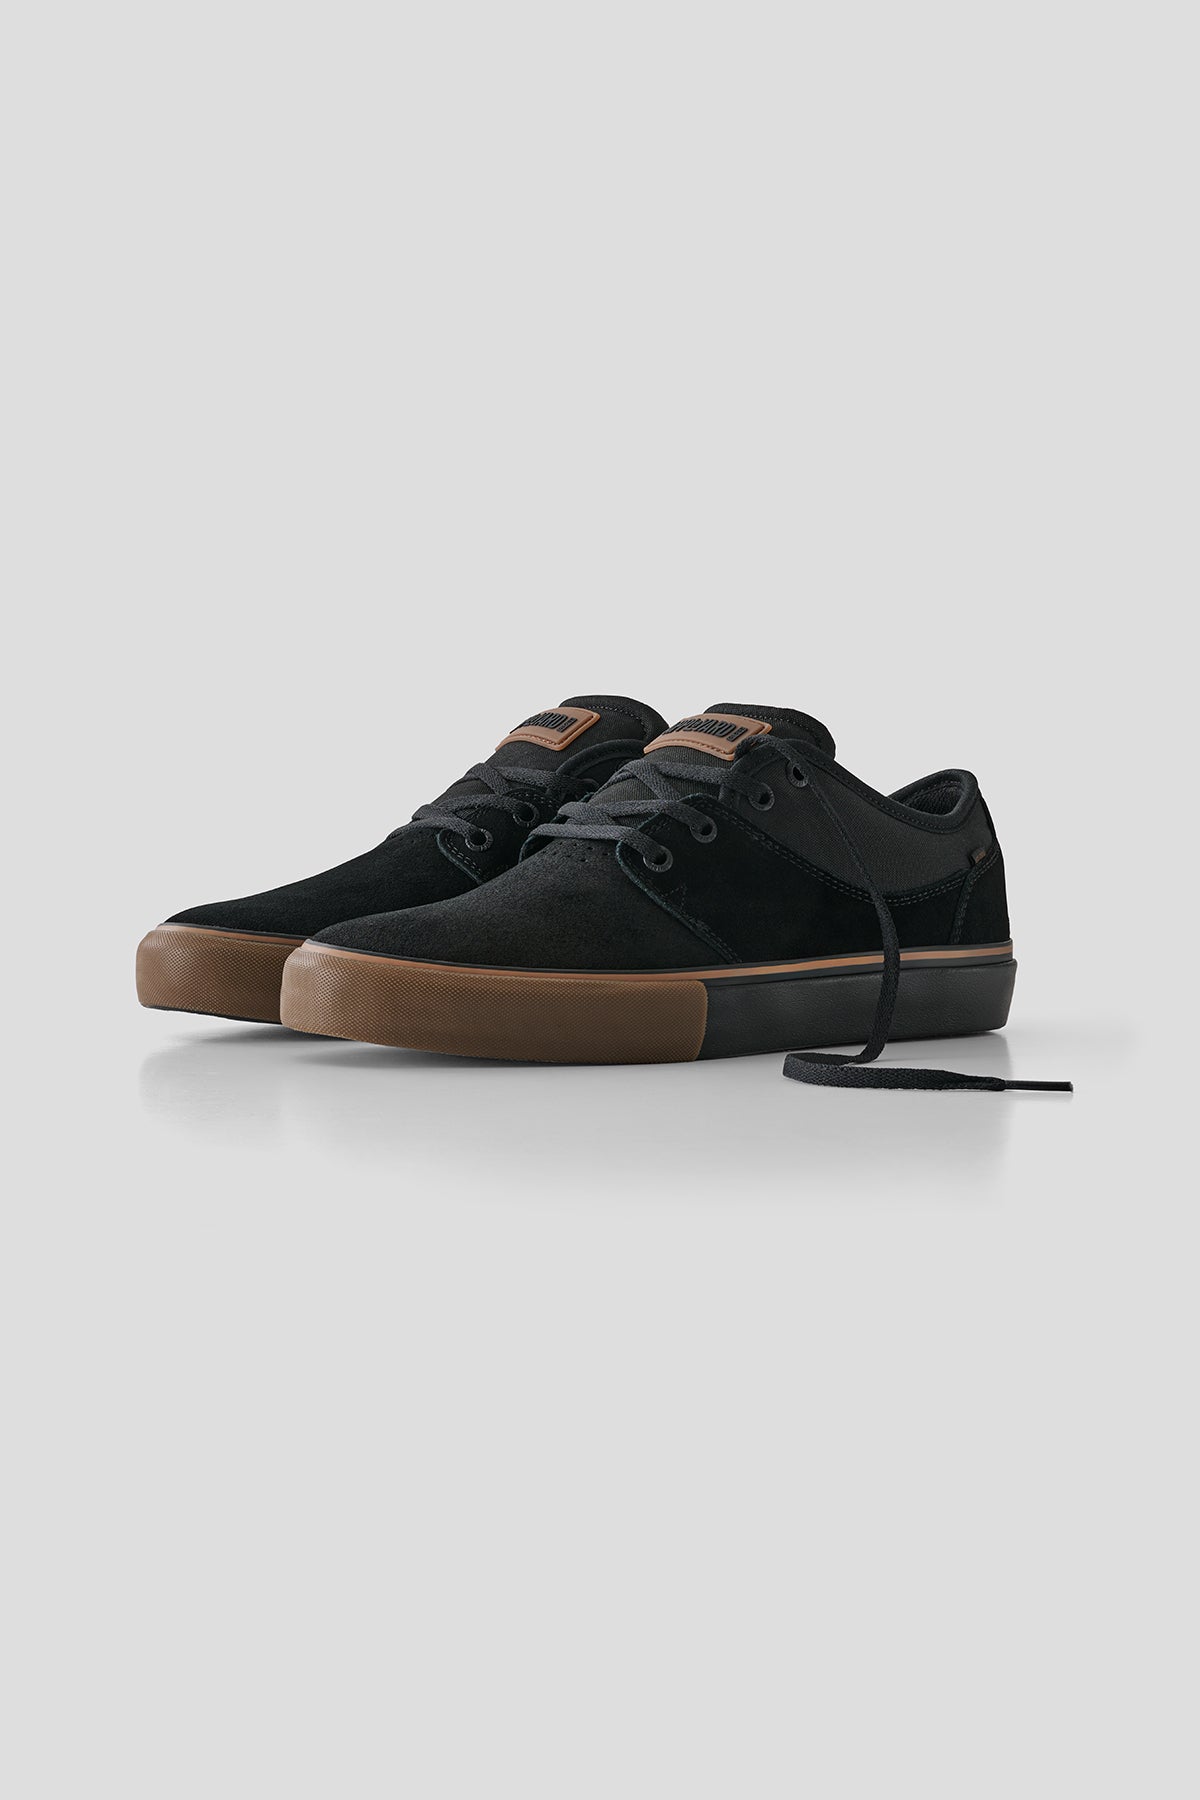 Globe - Mahalo - Black/Gum - Skate Shoes